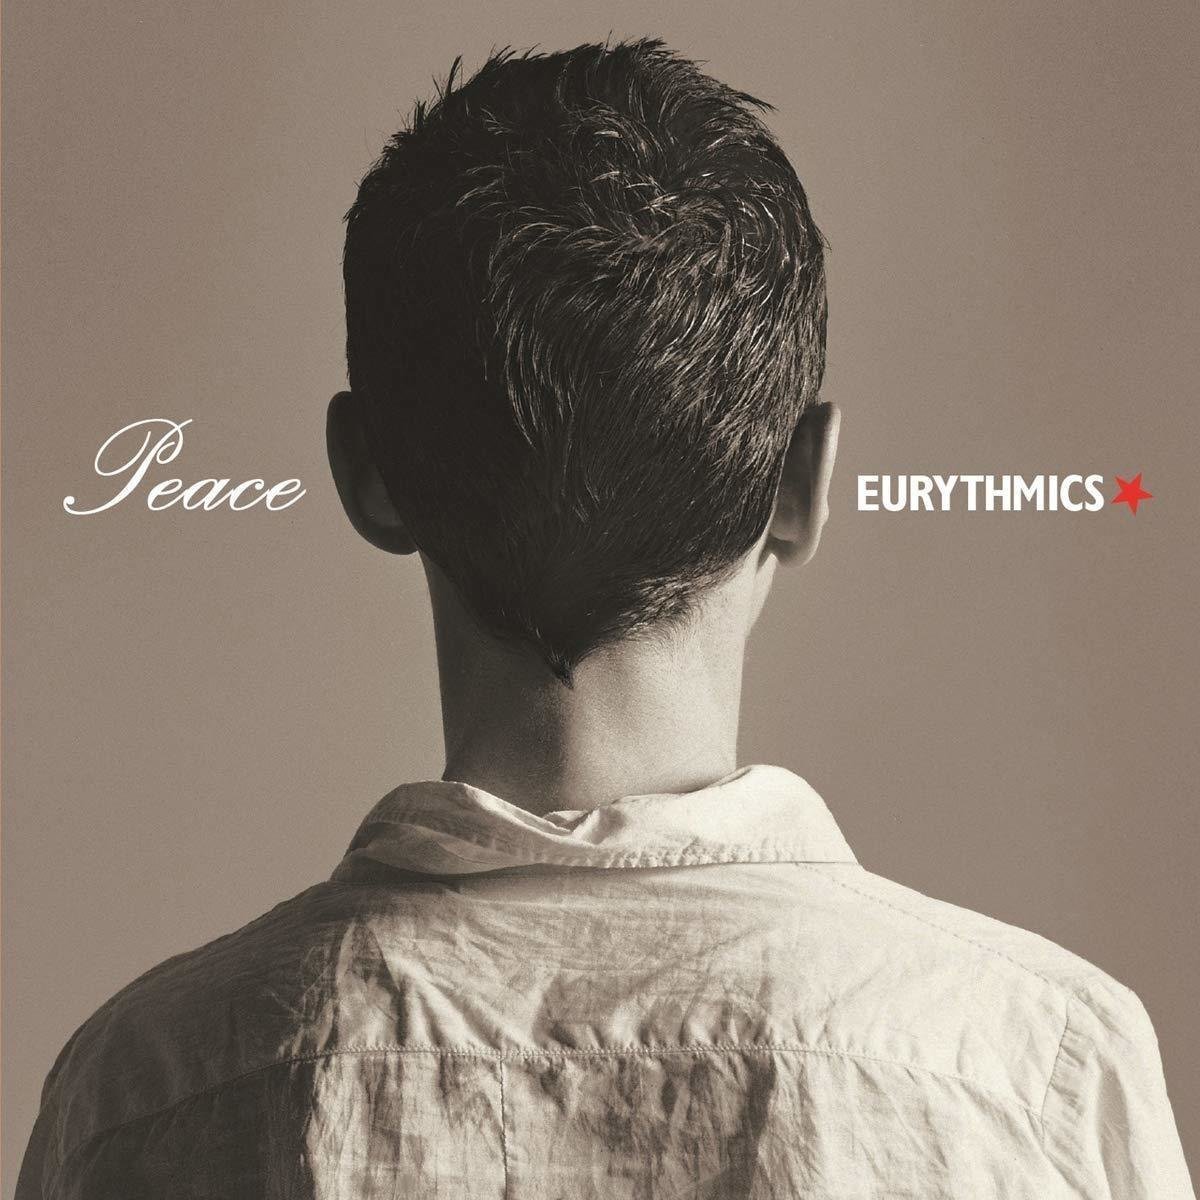 LP platňa Eurythmics Peace (LP)